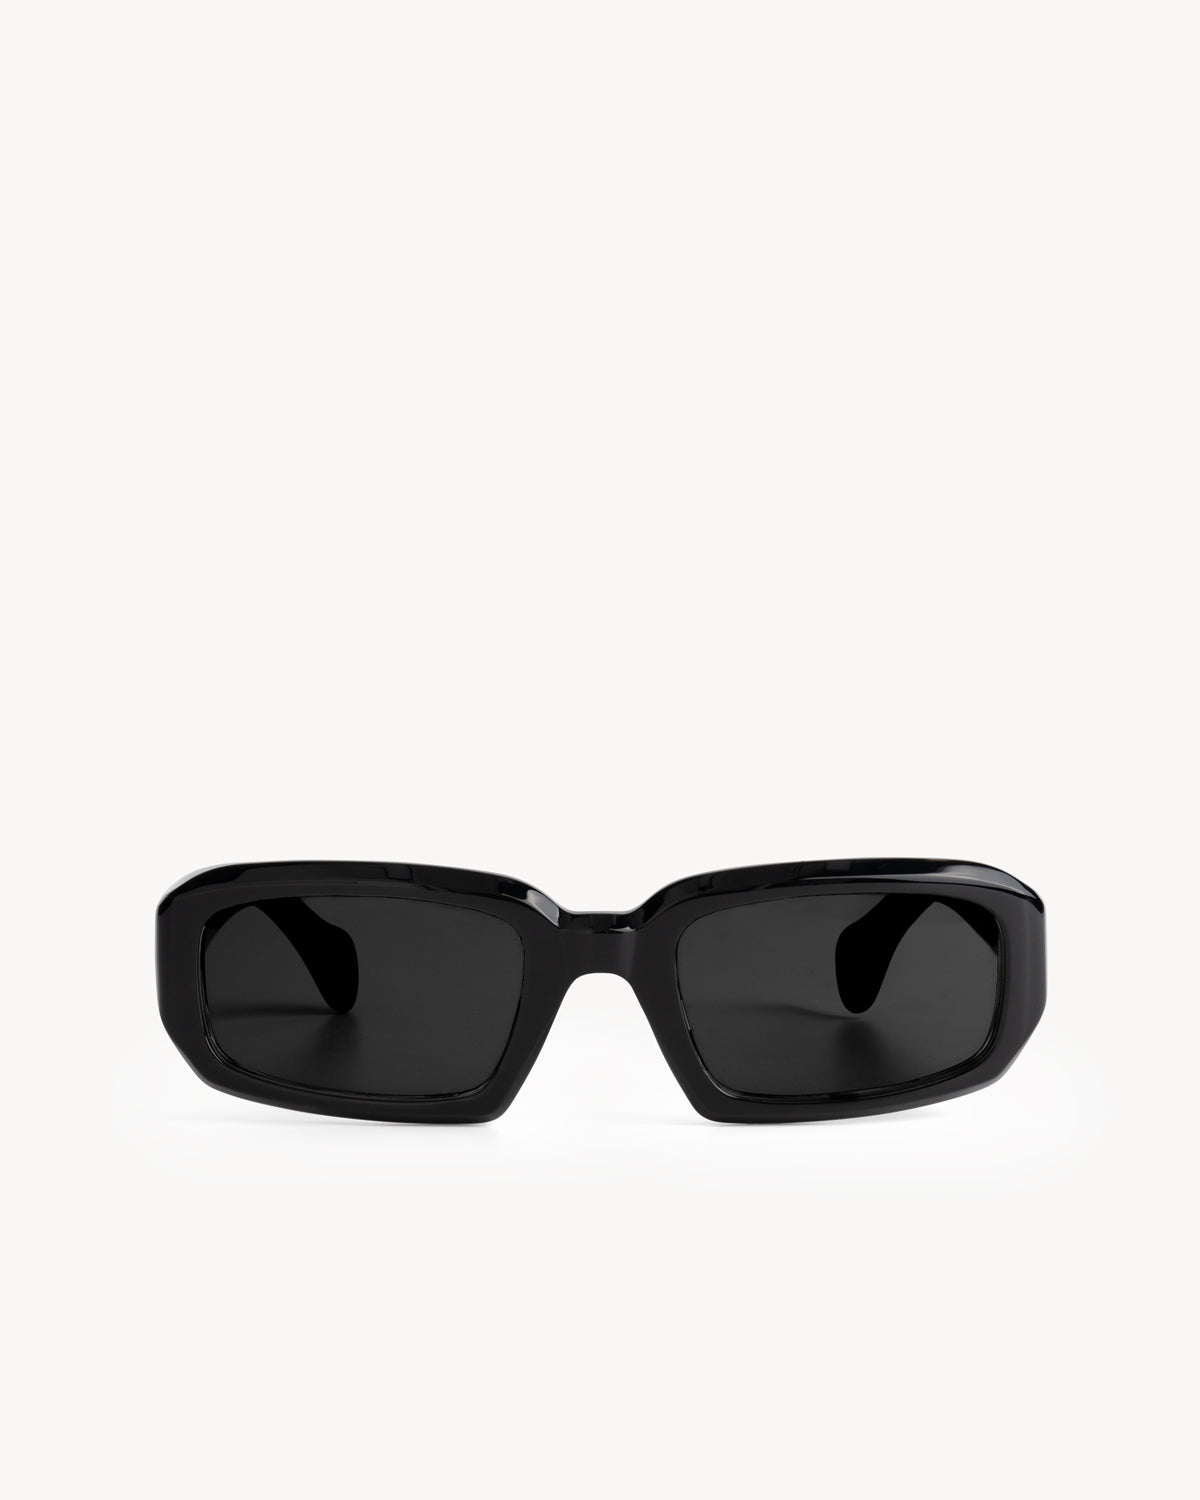 Port Tanger Mektoub Sunglasses in Black Acetate and Black Lenses 1